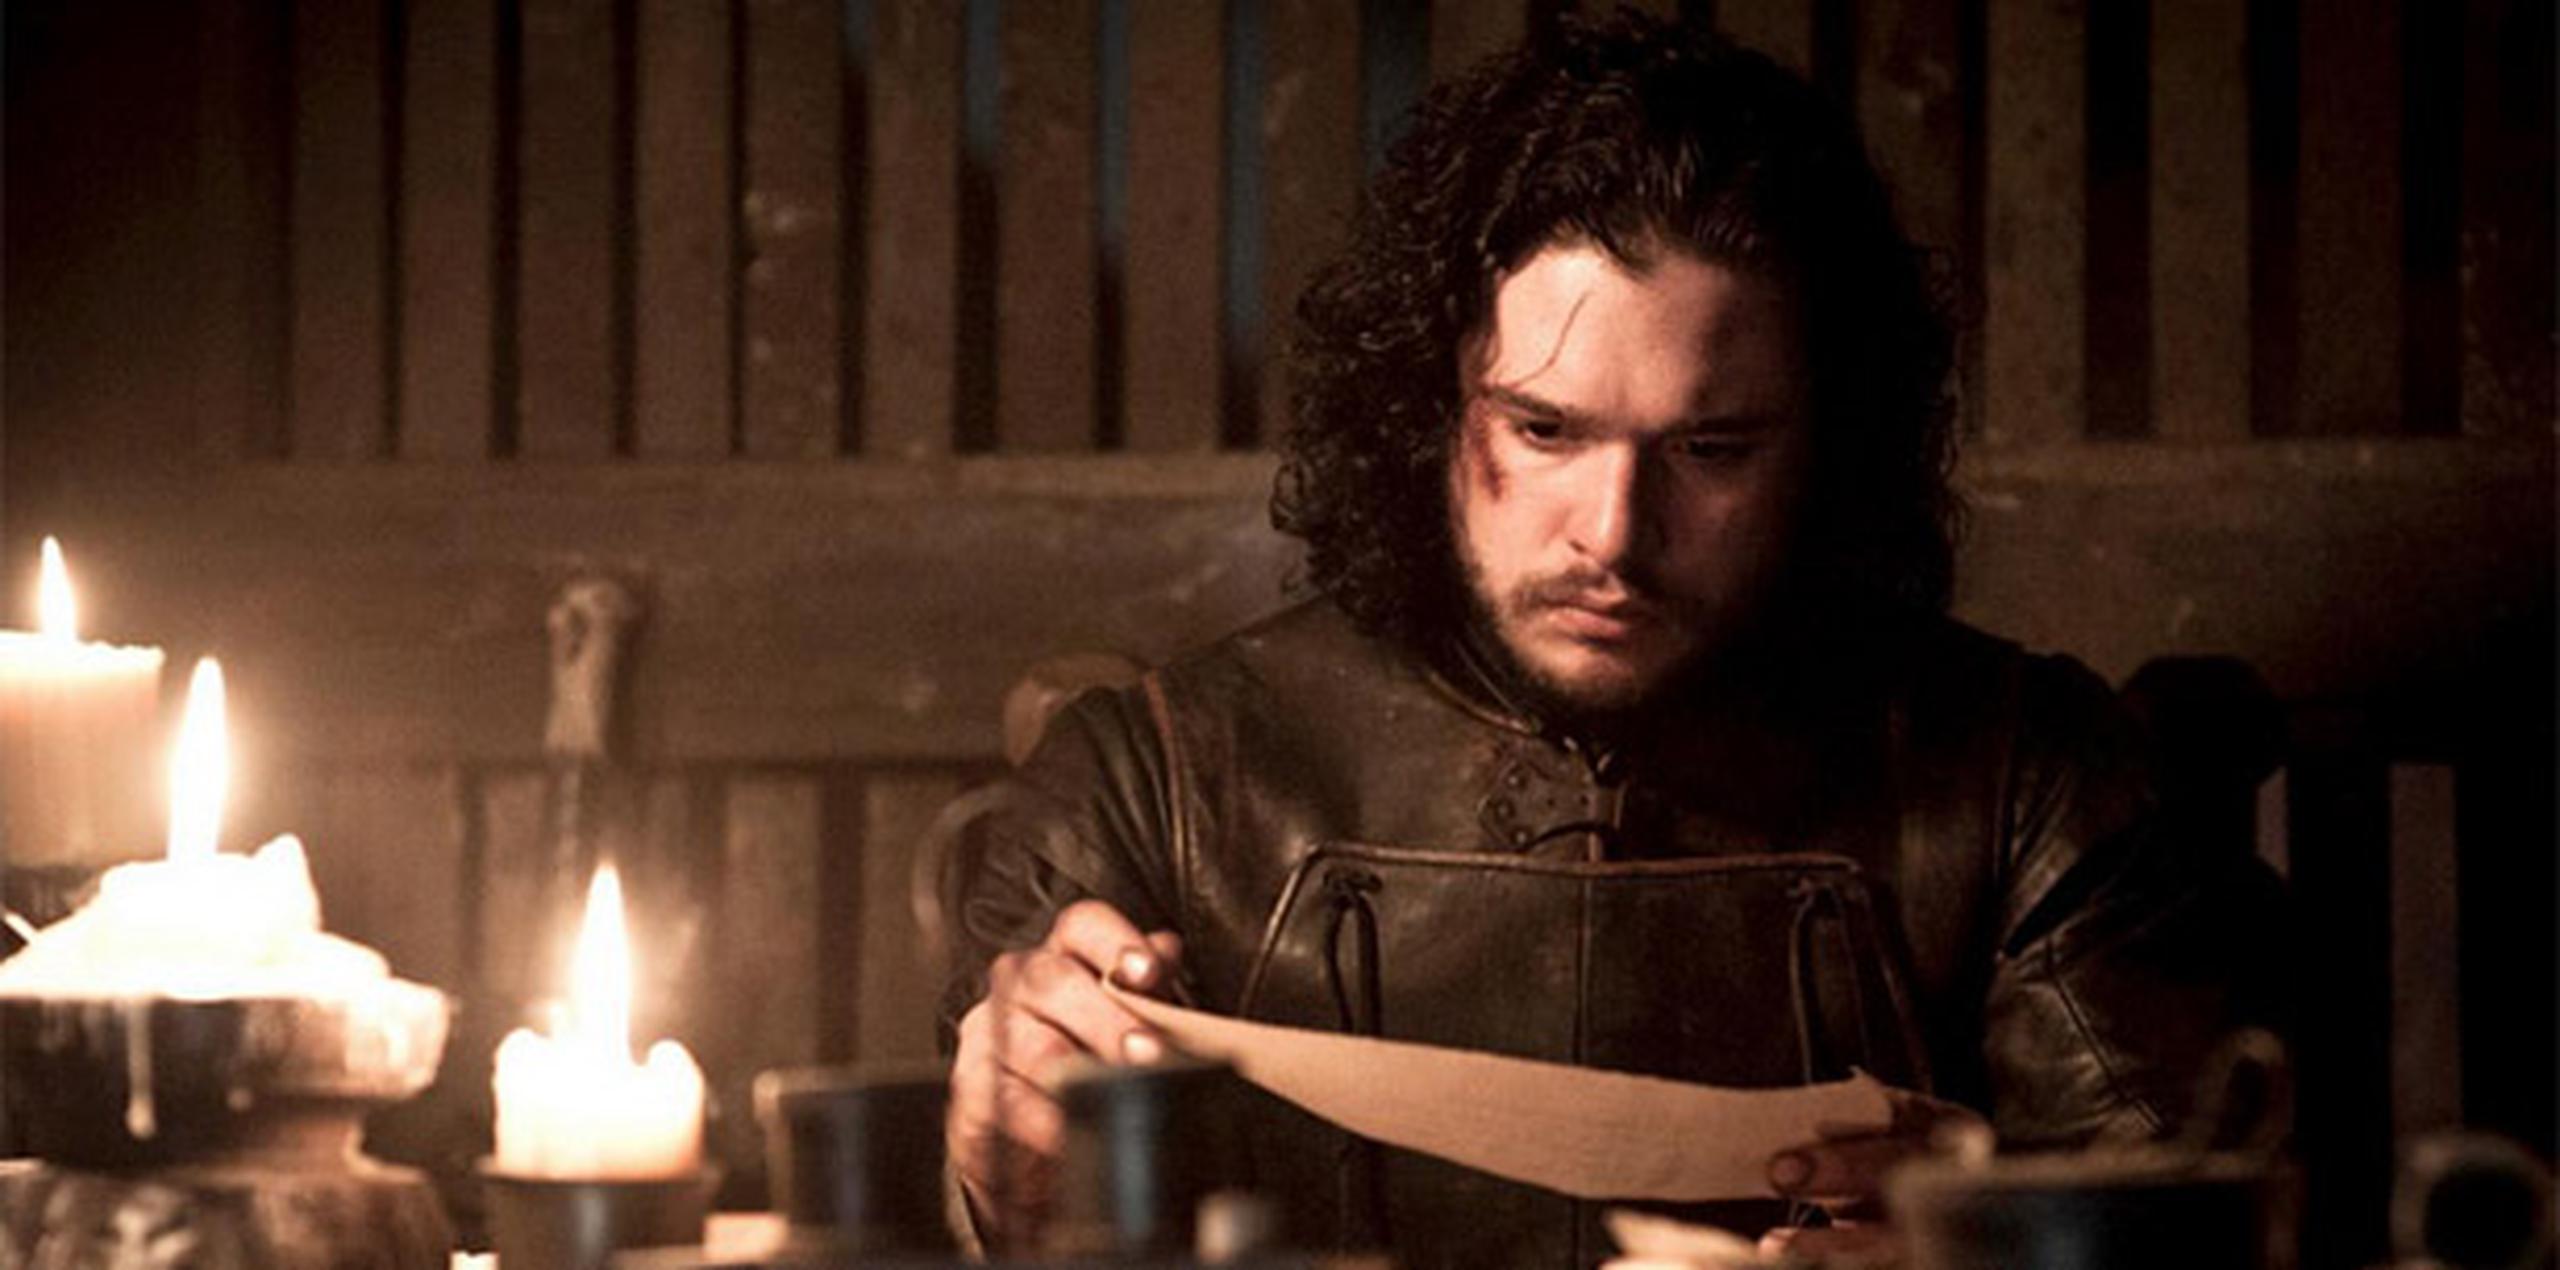 Jon Snow lee calmadamente sin saber lo que le espera minutos después. (HBO)